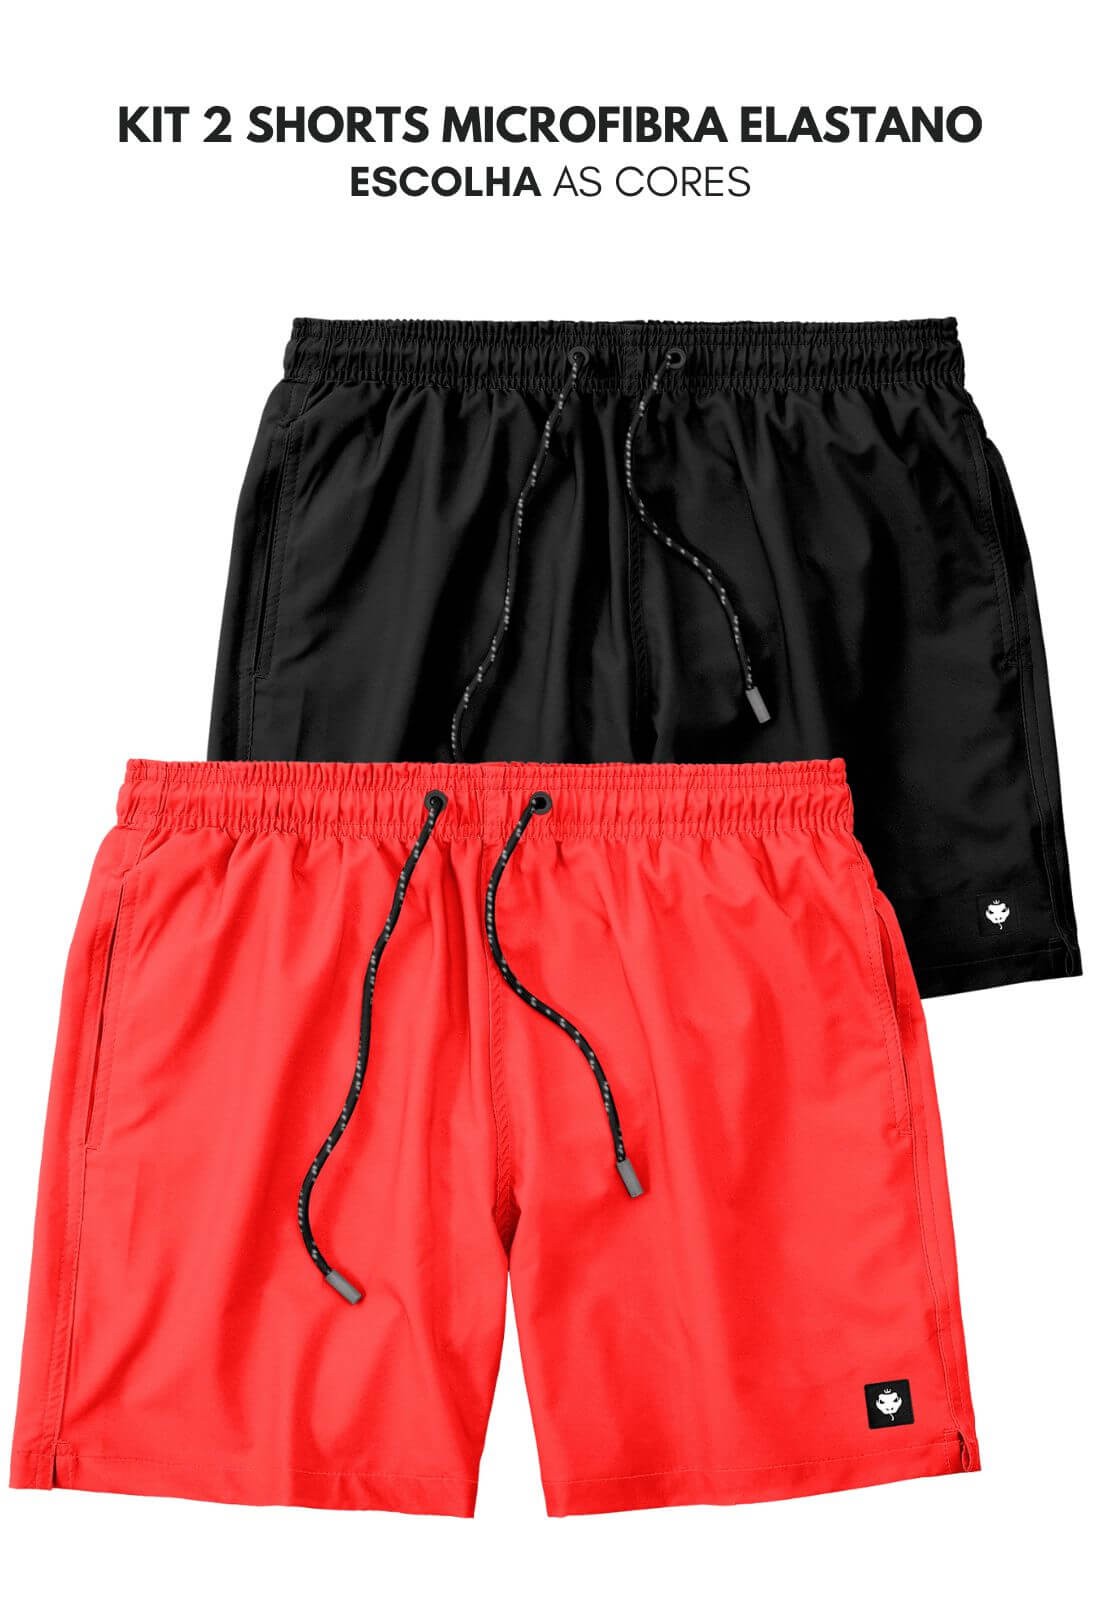 Kit 2 shorts microfibra elastano  Escolha as cores do kit - LaVíbora:  Shorts Masculinos de Praia, Roupas e mais!